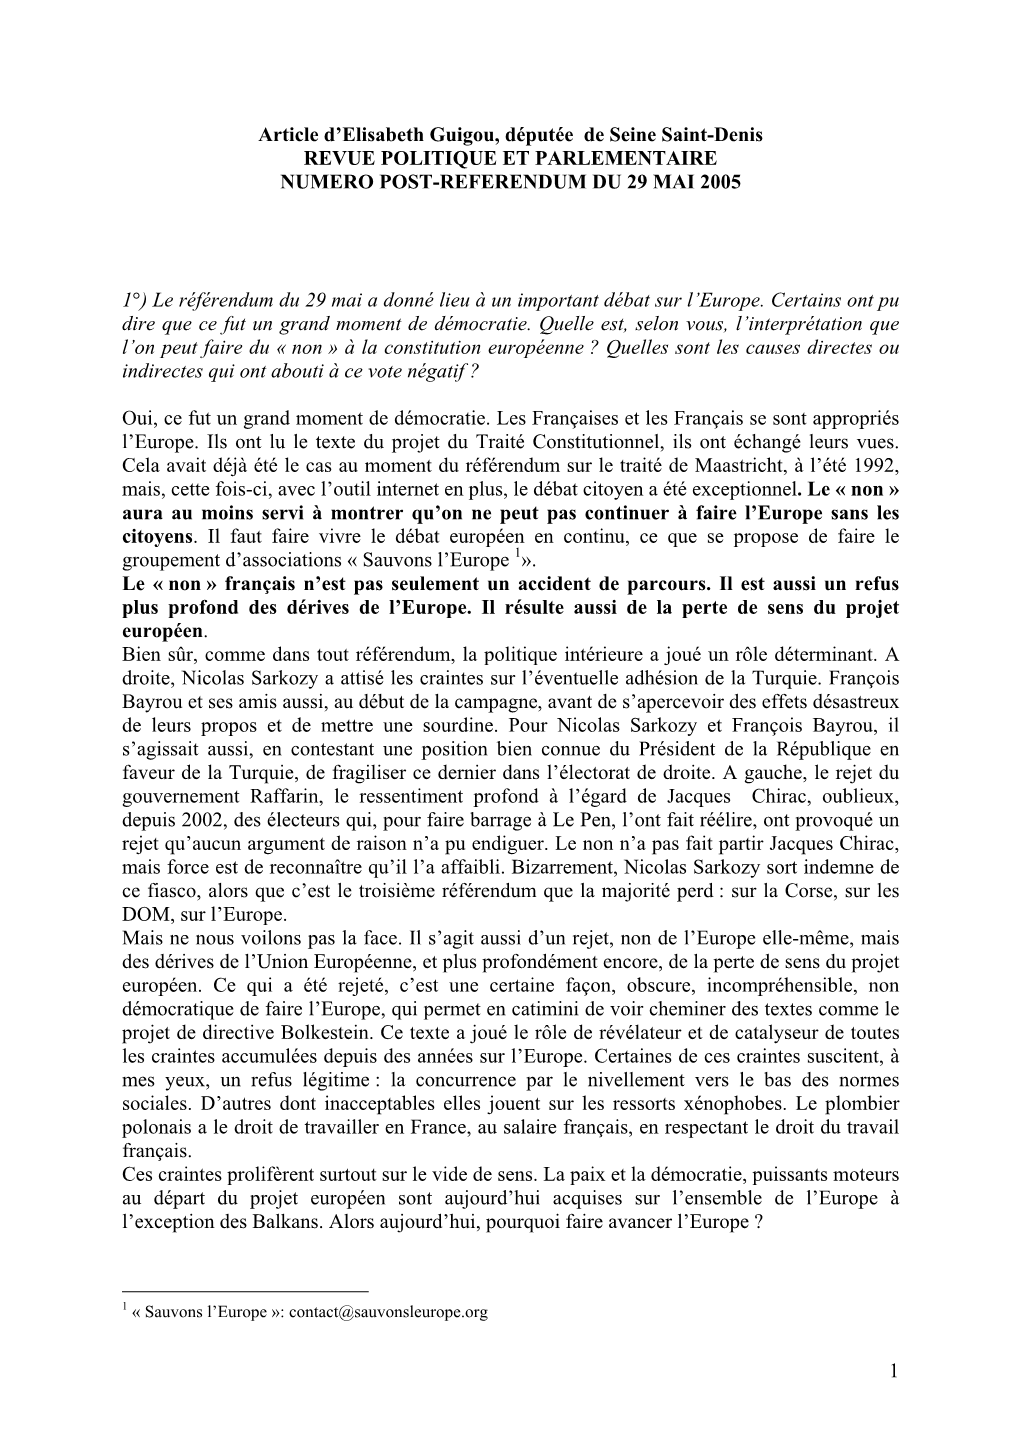 1 Article D'elisabeth Guigou, Députée De Seine Saint-Denis REVUE POLITIQUE ET PARLEMENTAIRE NUMERO POST-REFERENDUM DU 29 MA